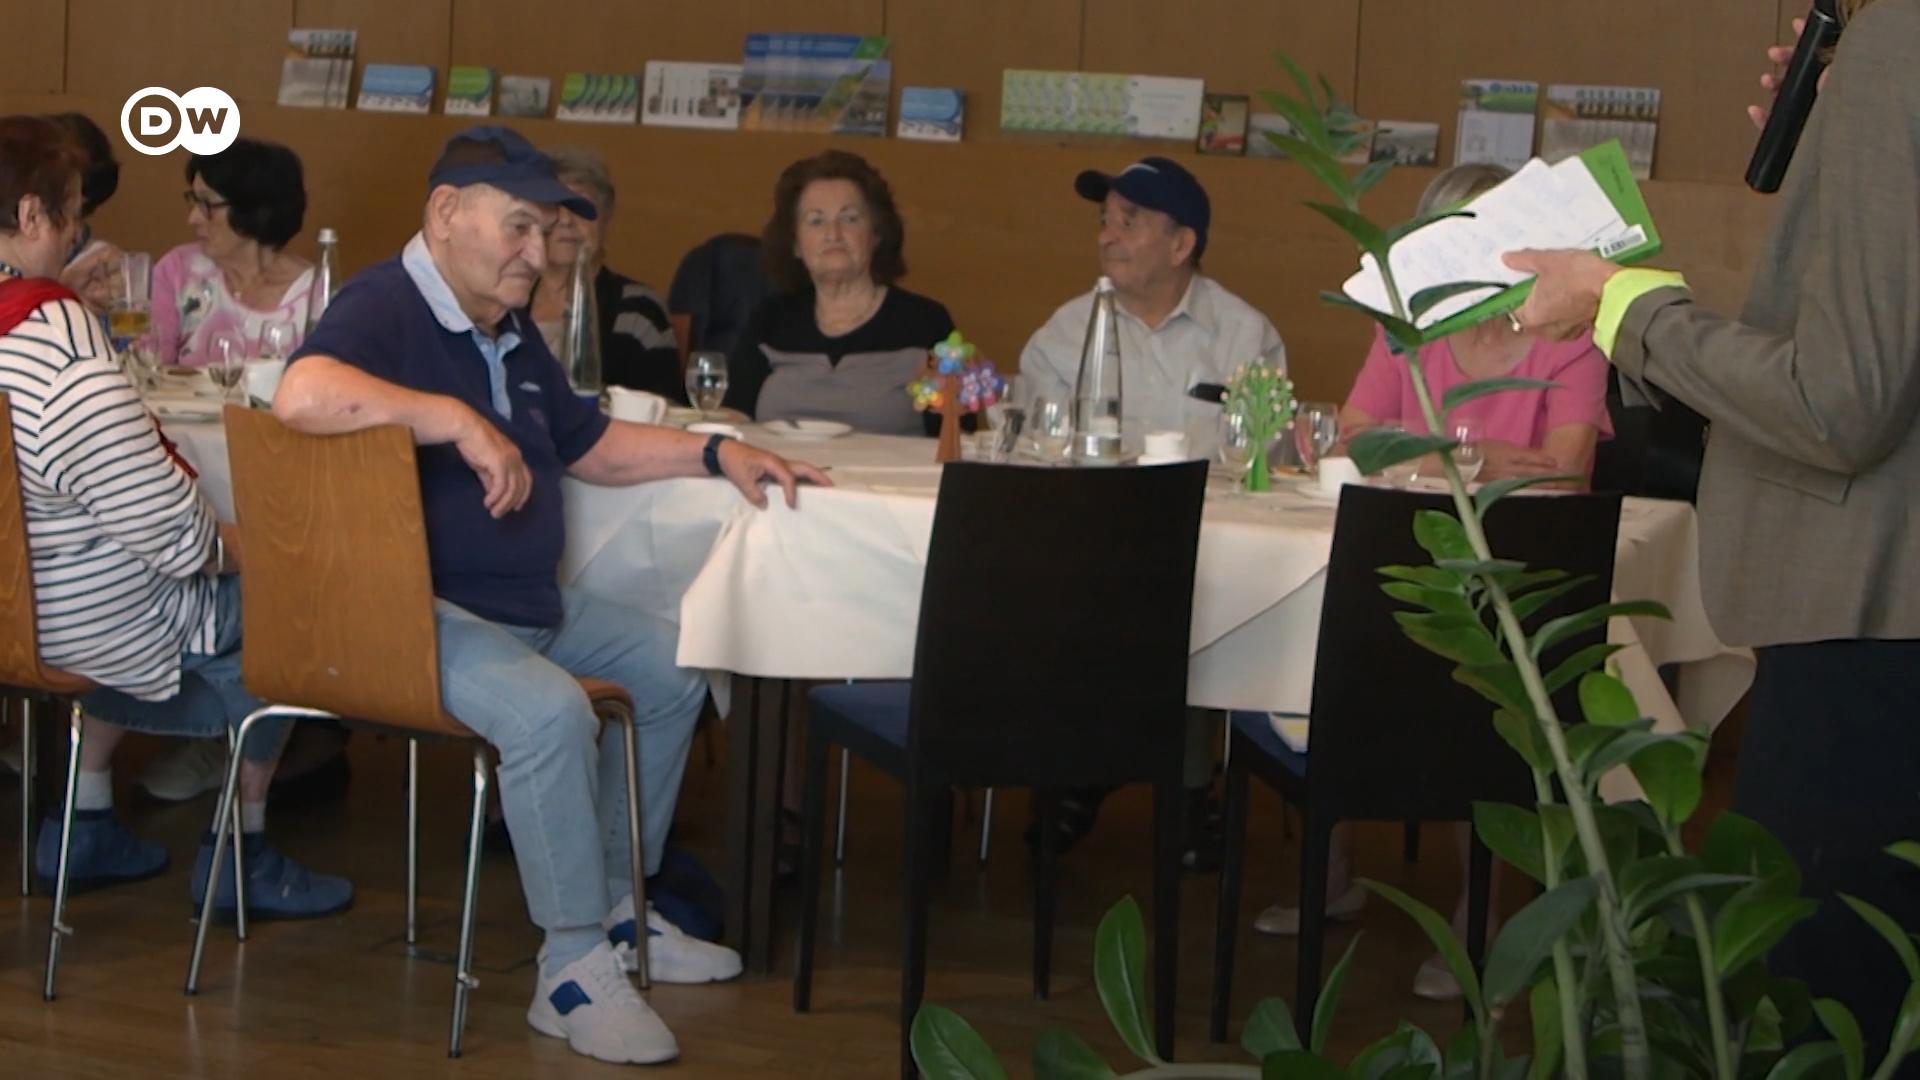 Natan G. i inni ocaleni z Holokaustu spotykają się w monachijskiej kawiarni i dzielą swoimi traumatycznymi przeżyciami.